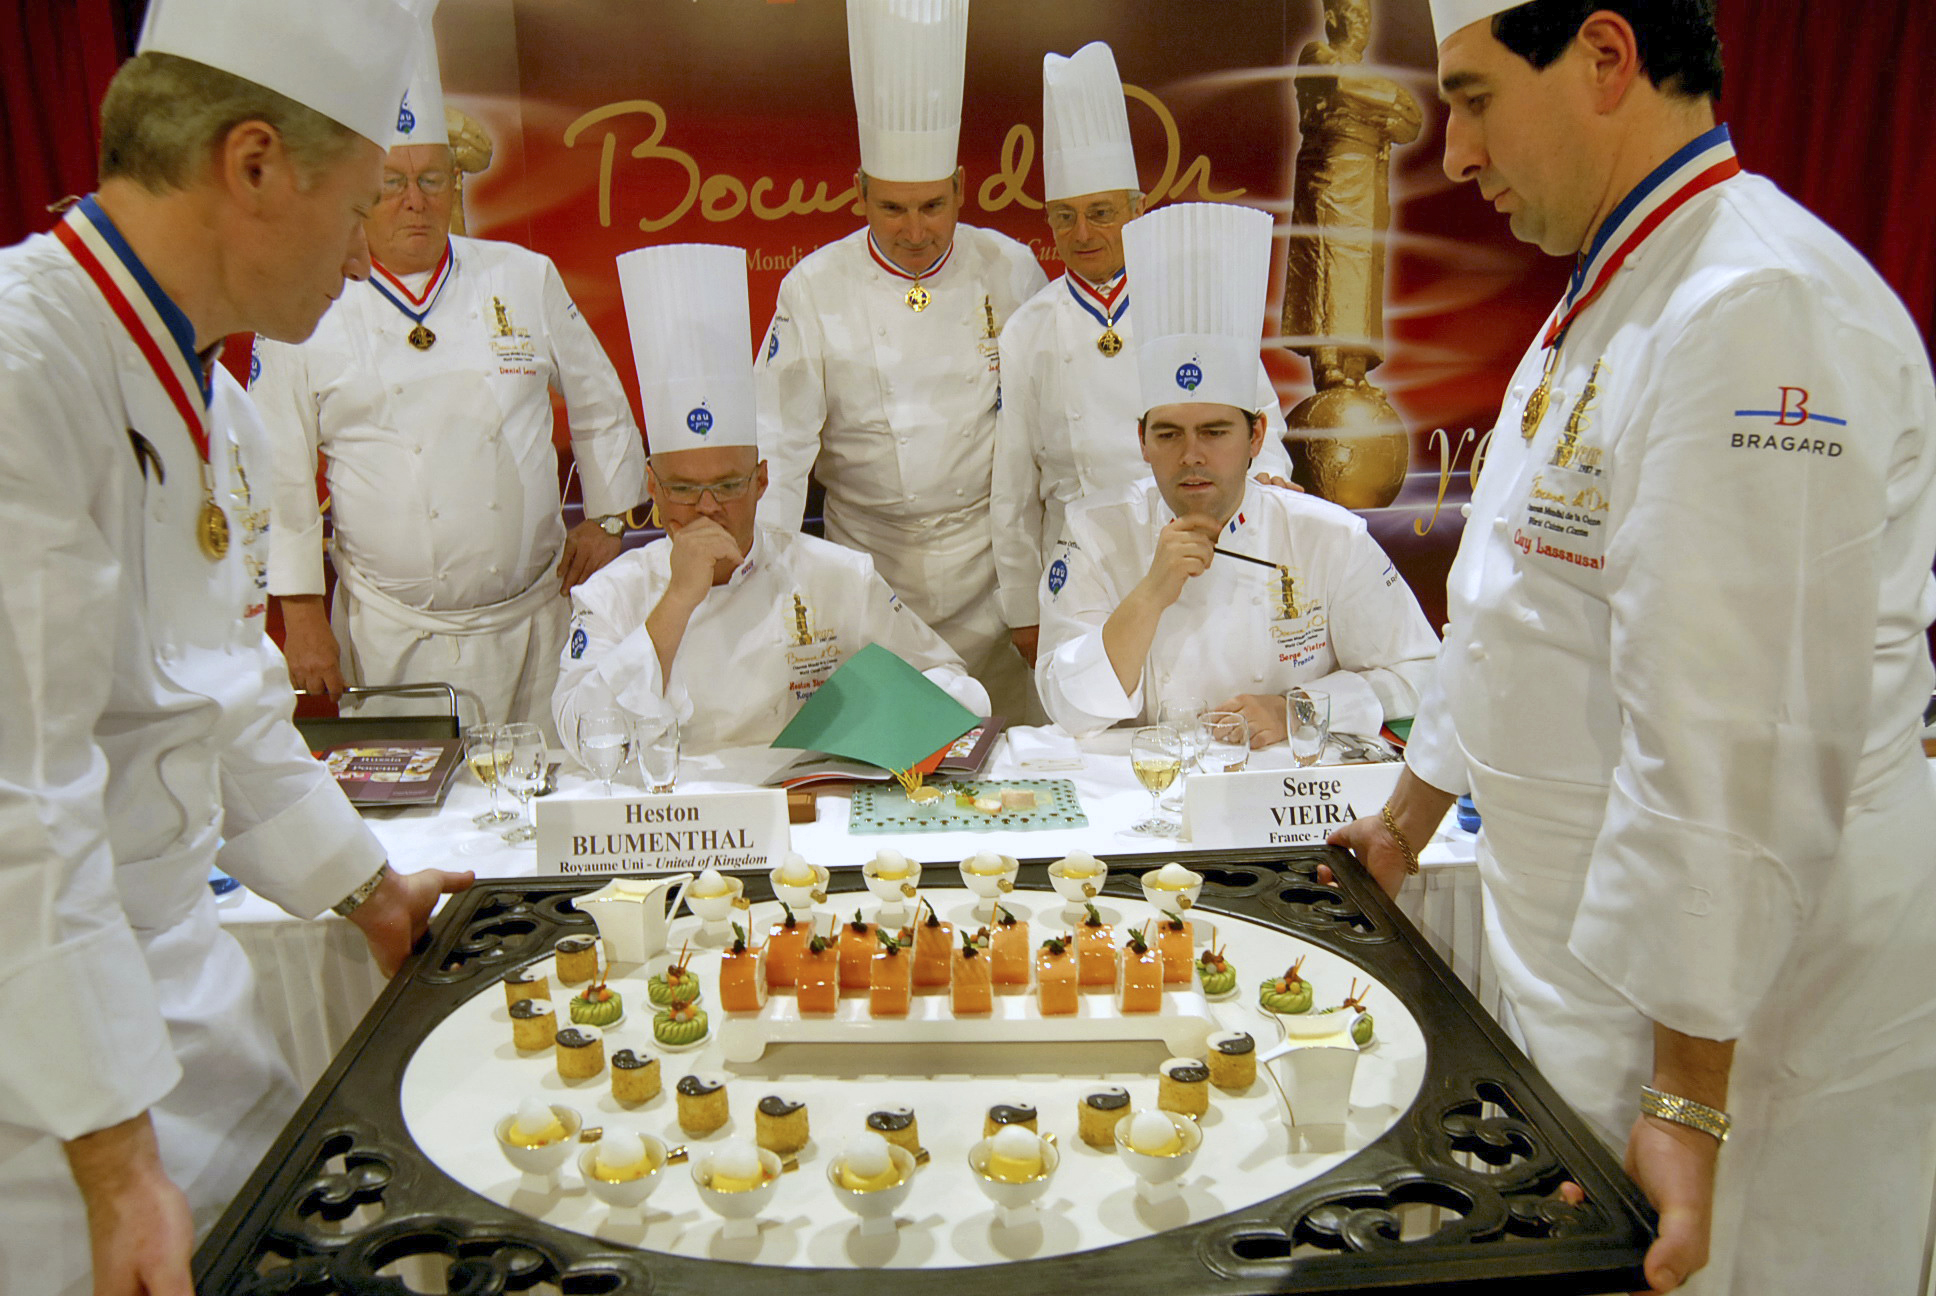 Bocuse d’Or, cea mai importanta competitie gastronomica din lume